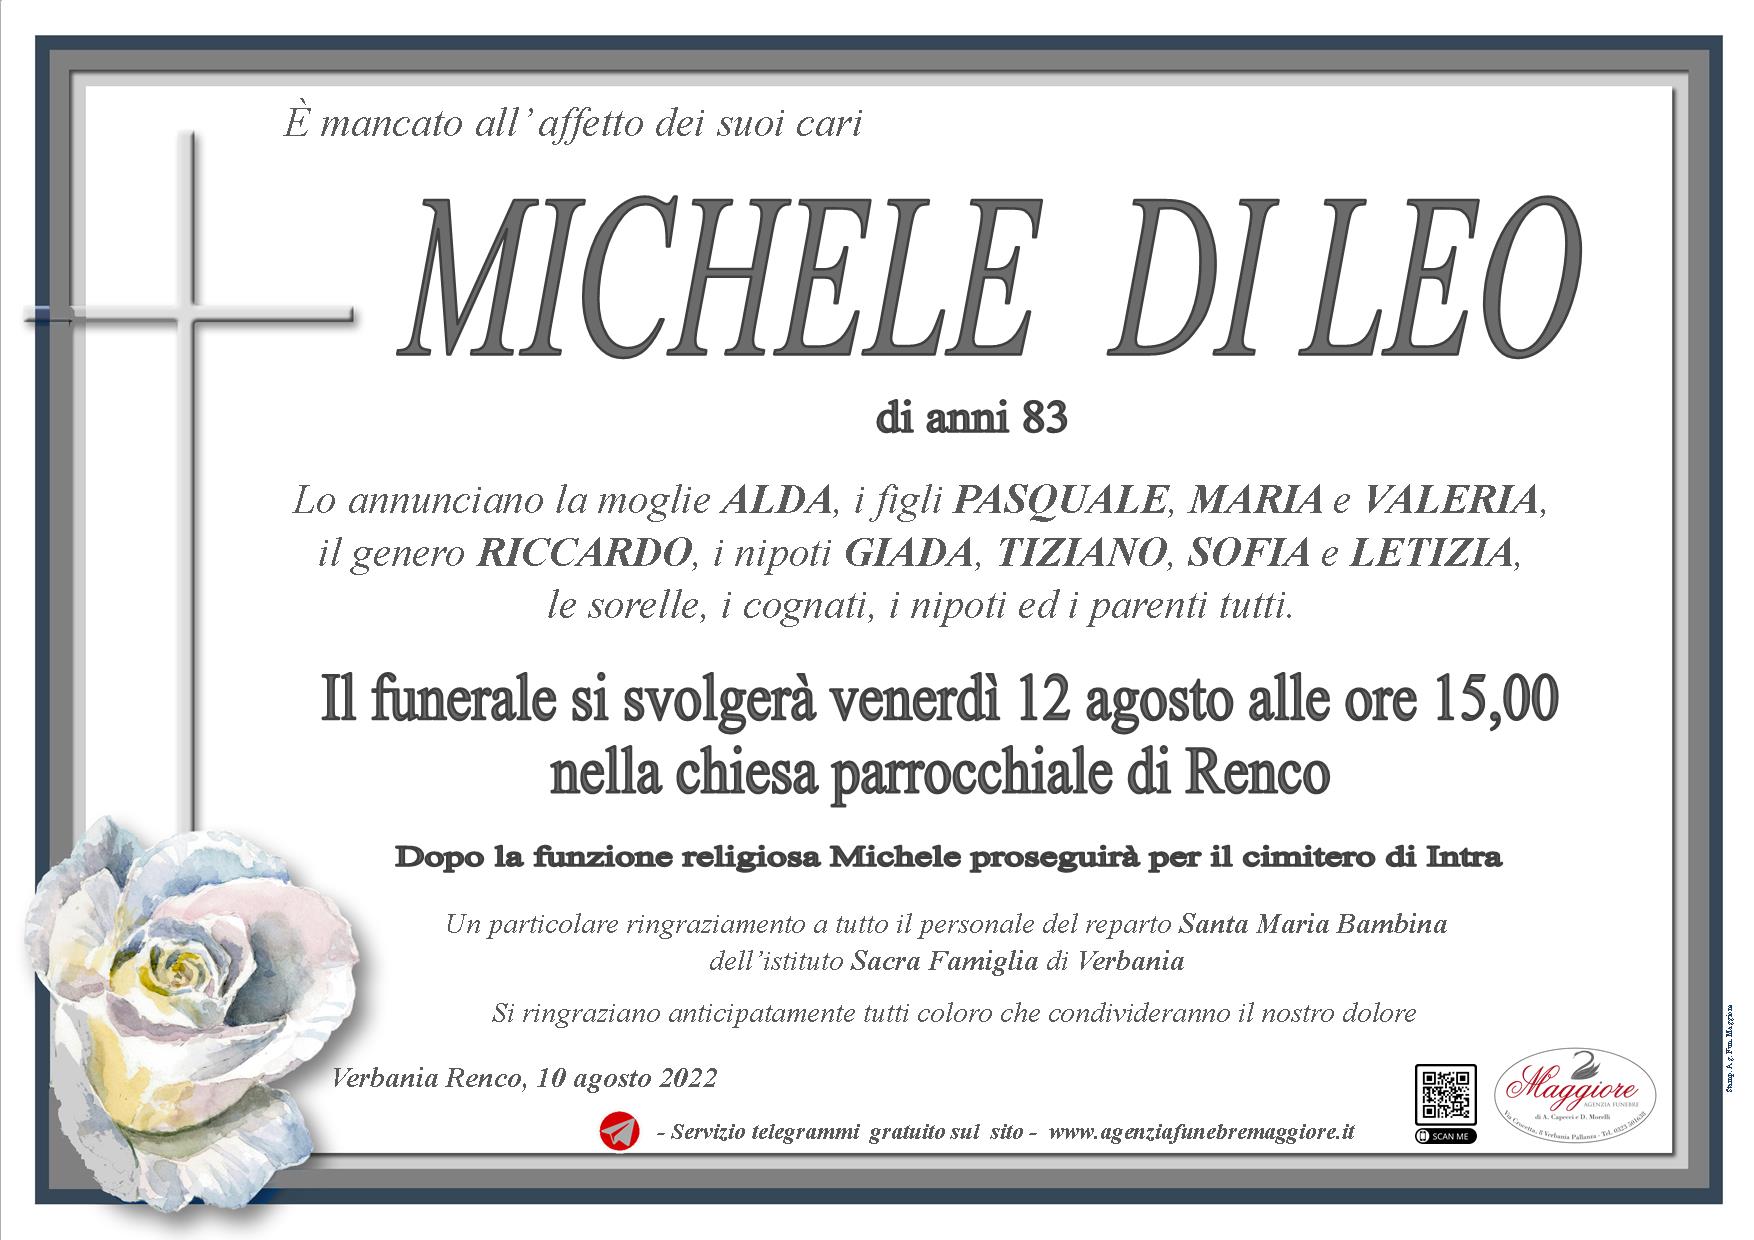 Michele Di Leo